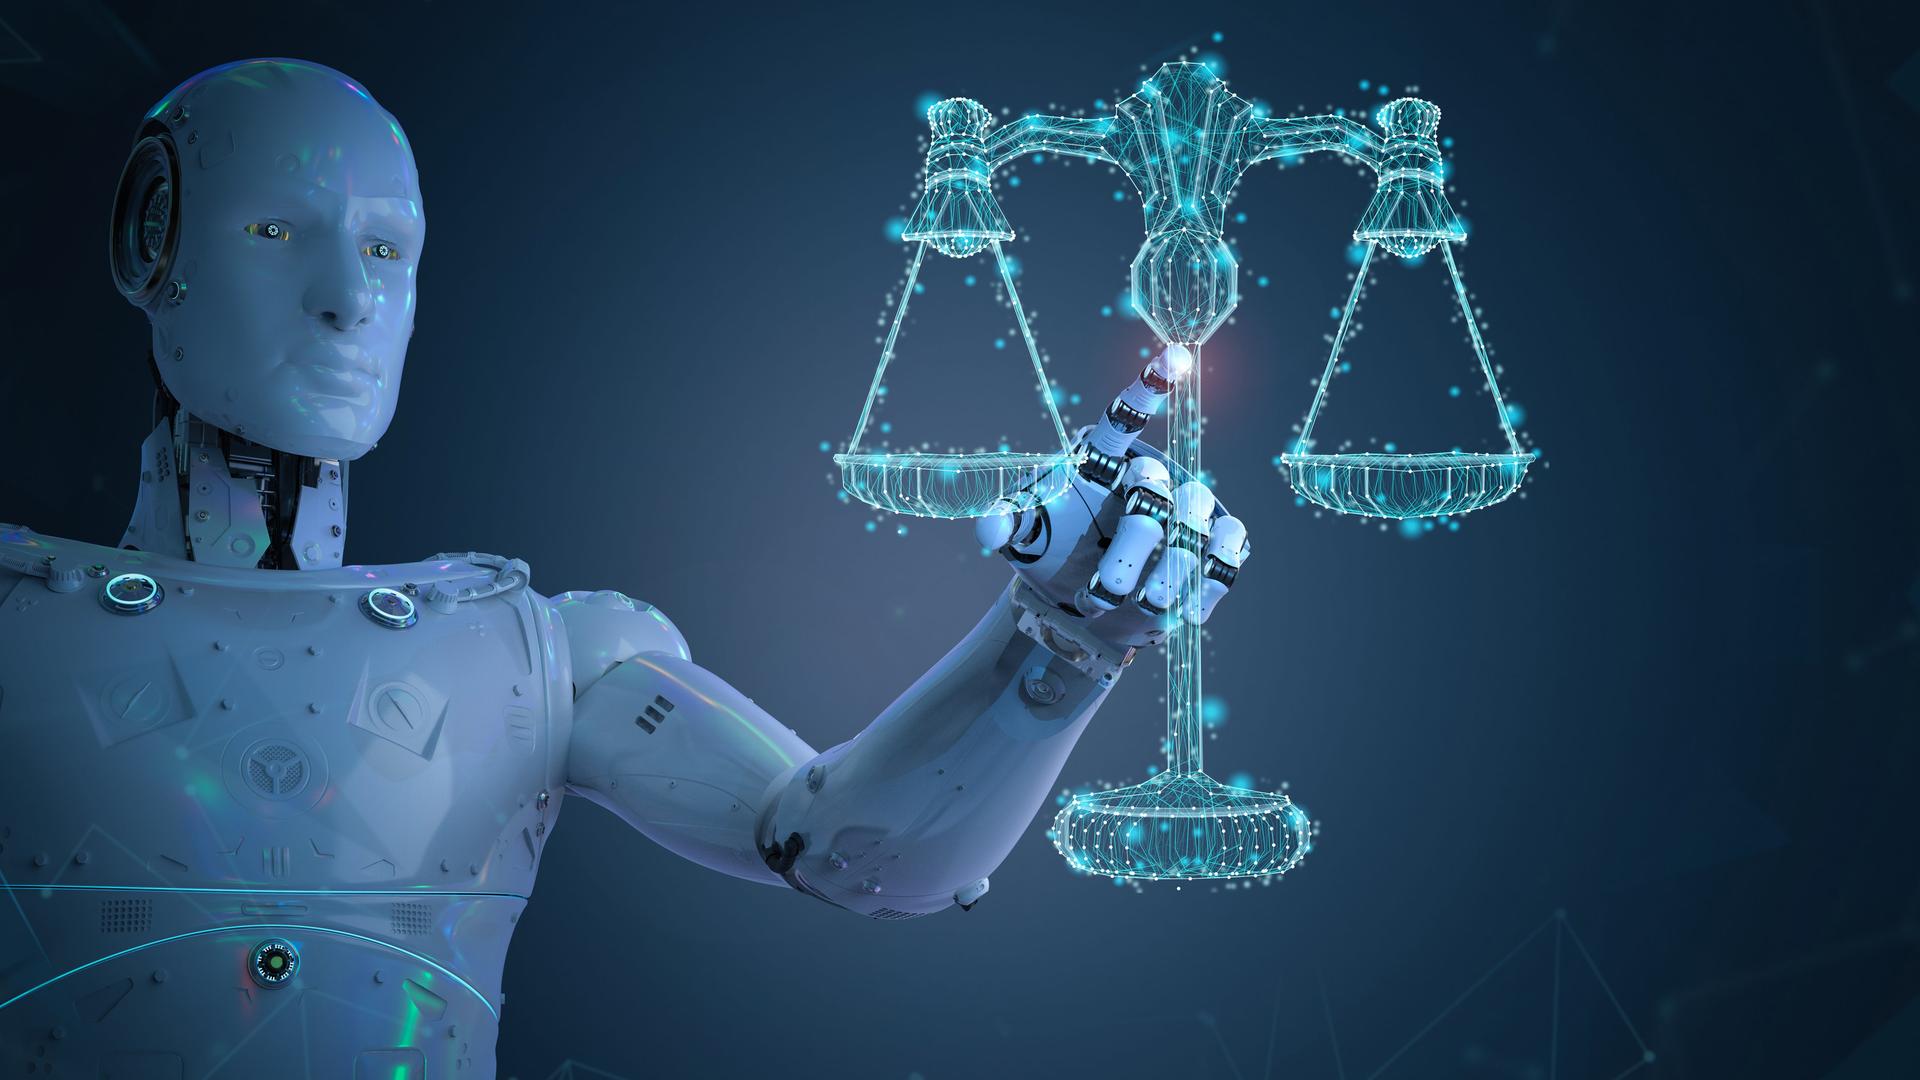 Ein 3D-Rendering zeigt einen Roboter neben einer Waage als Sympol für das Rechtssystem.